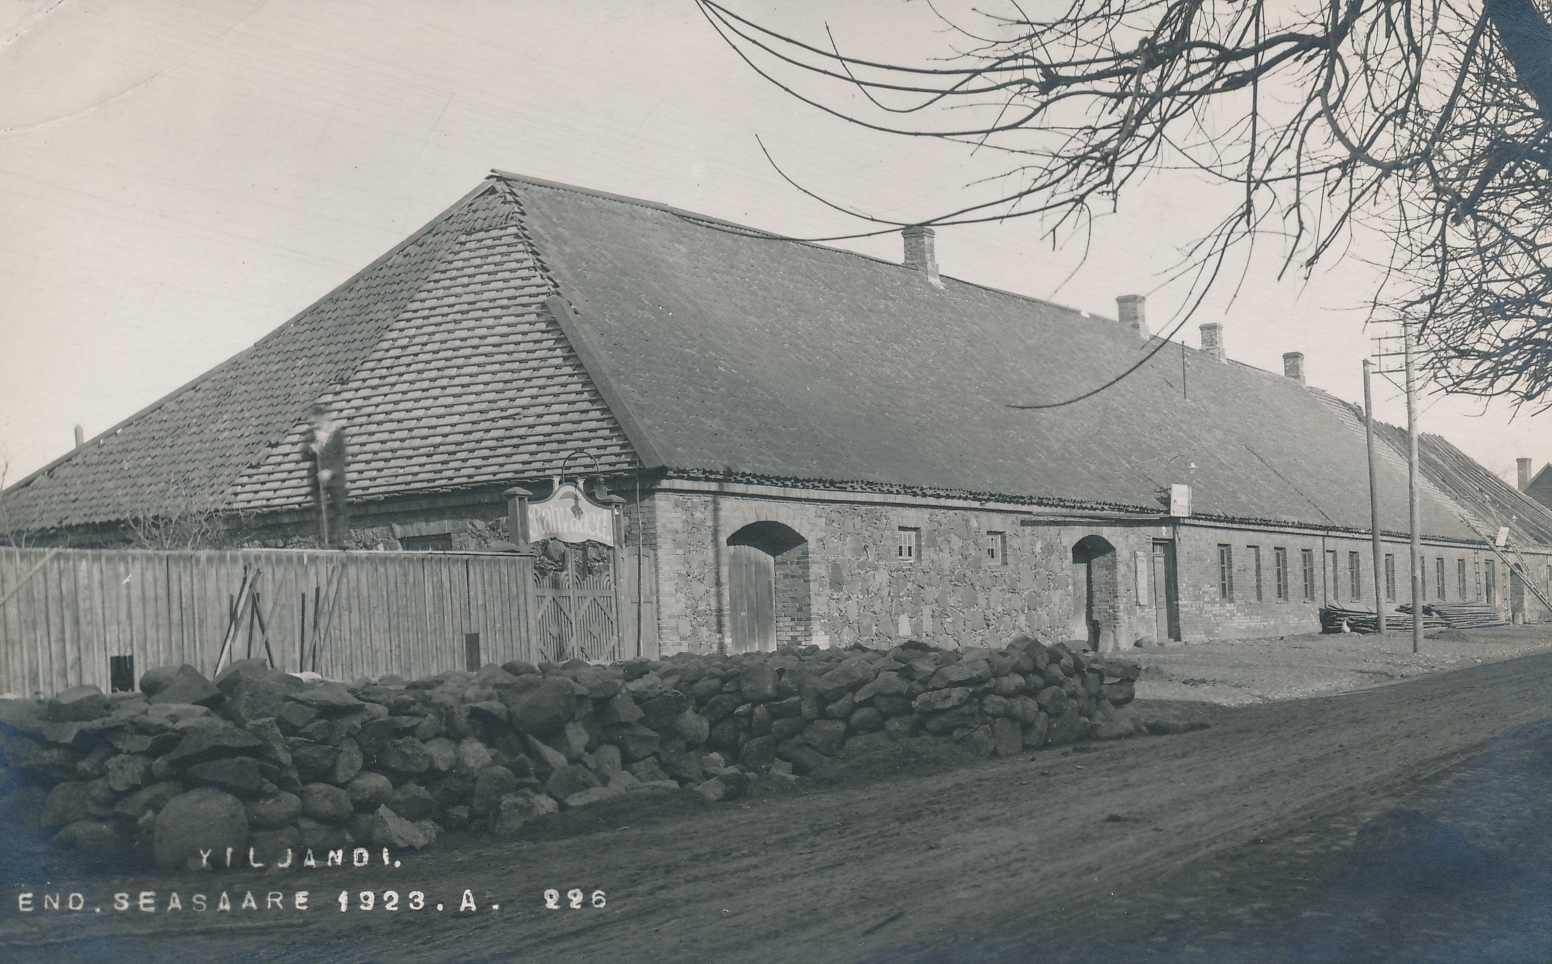 foto, Viljandi, Seasaare kõrts Tallinna tn 5, 1923, foto J. Riet